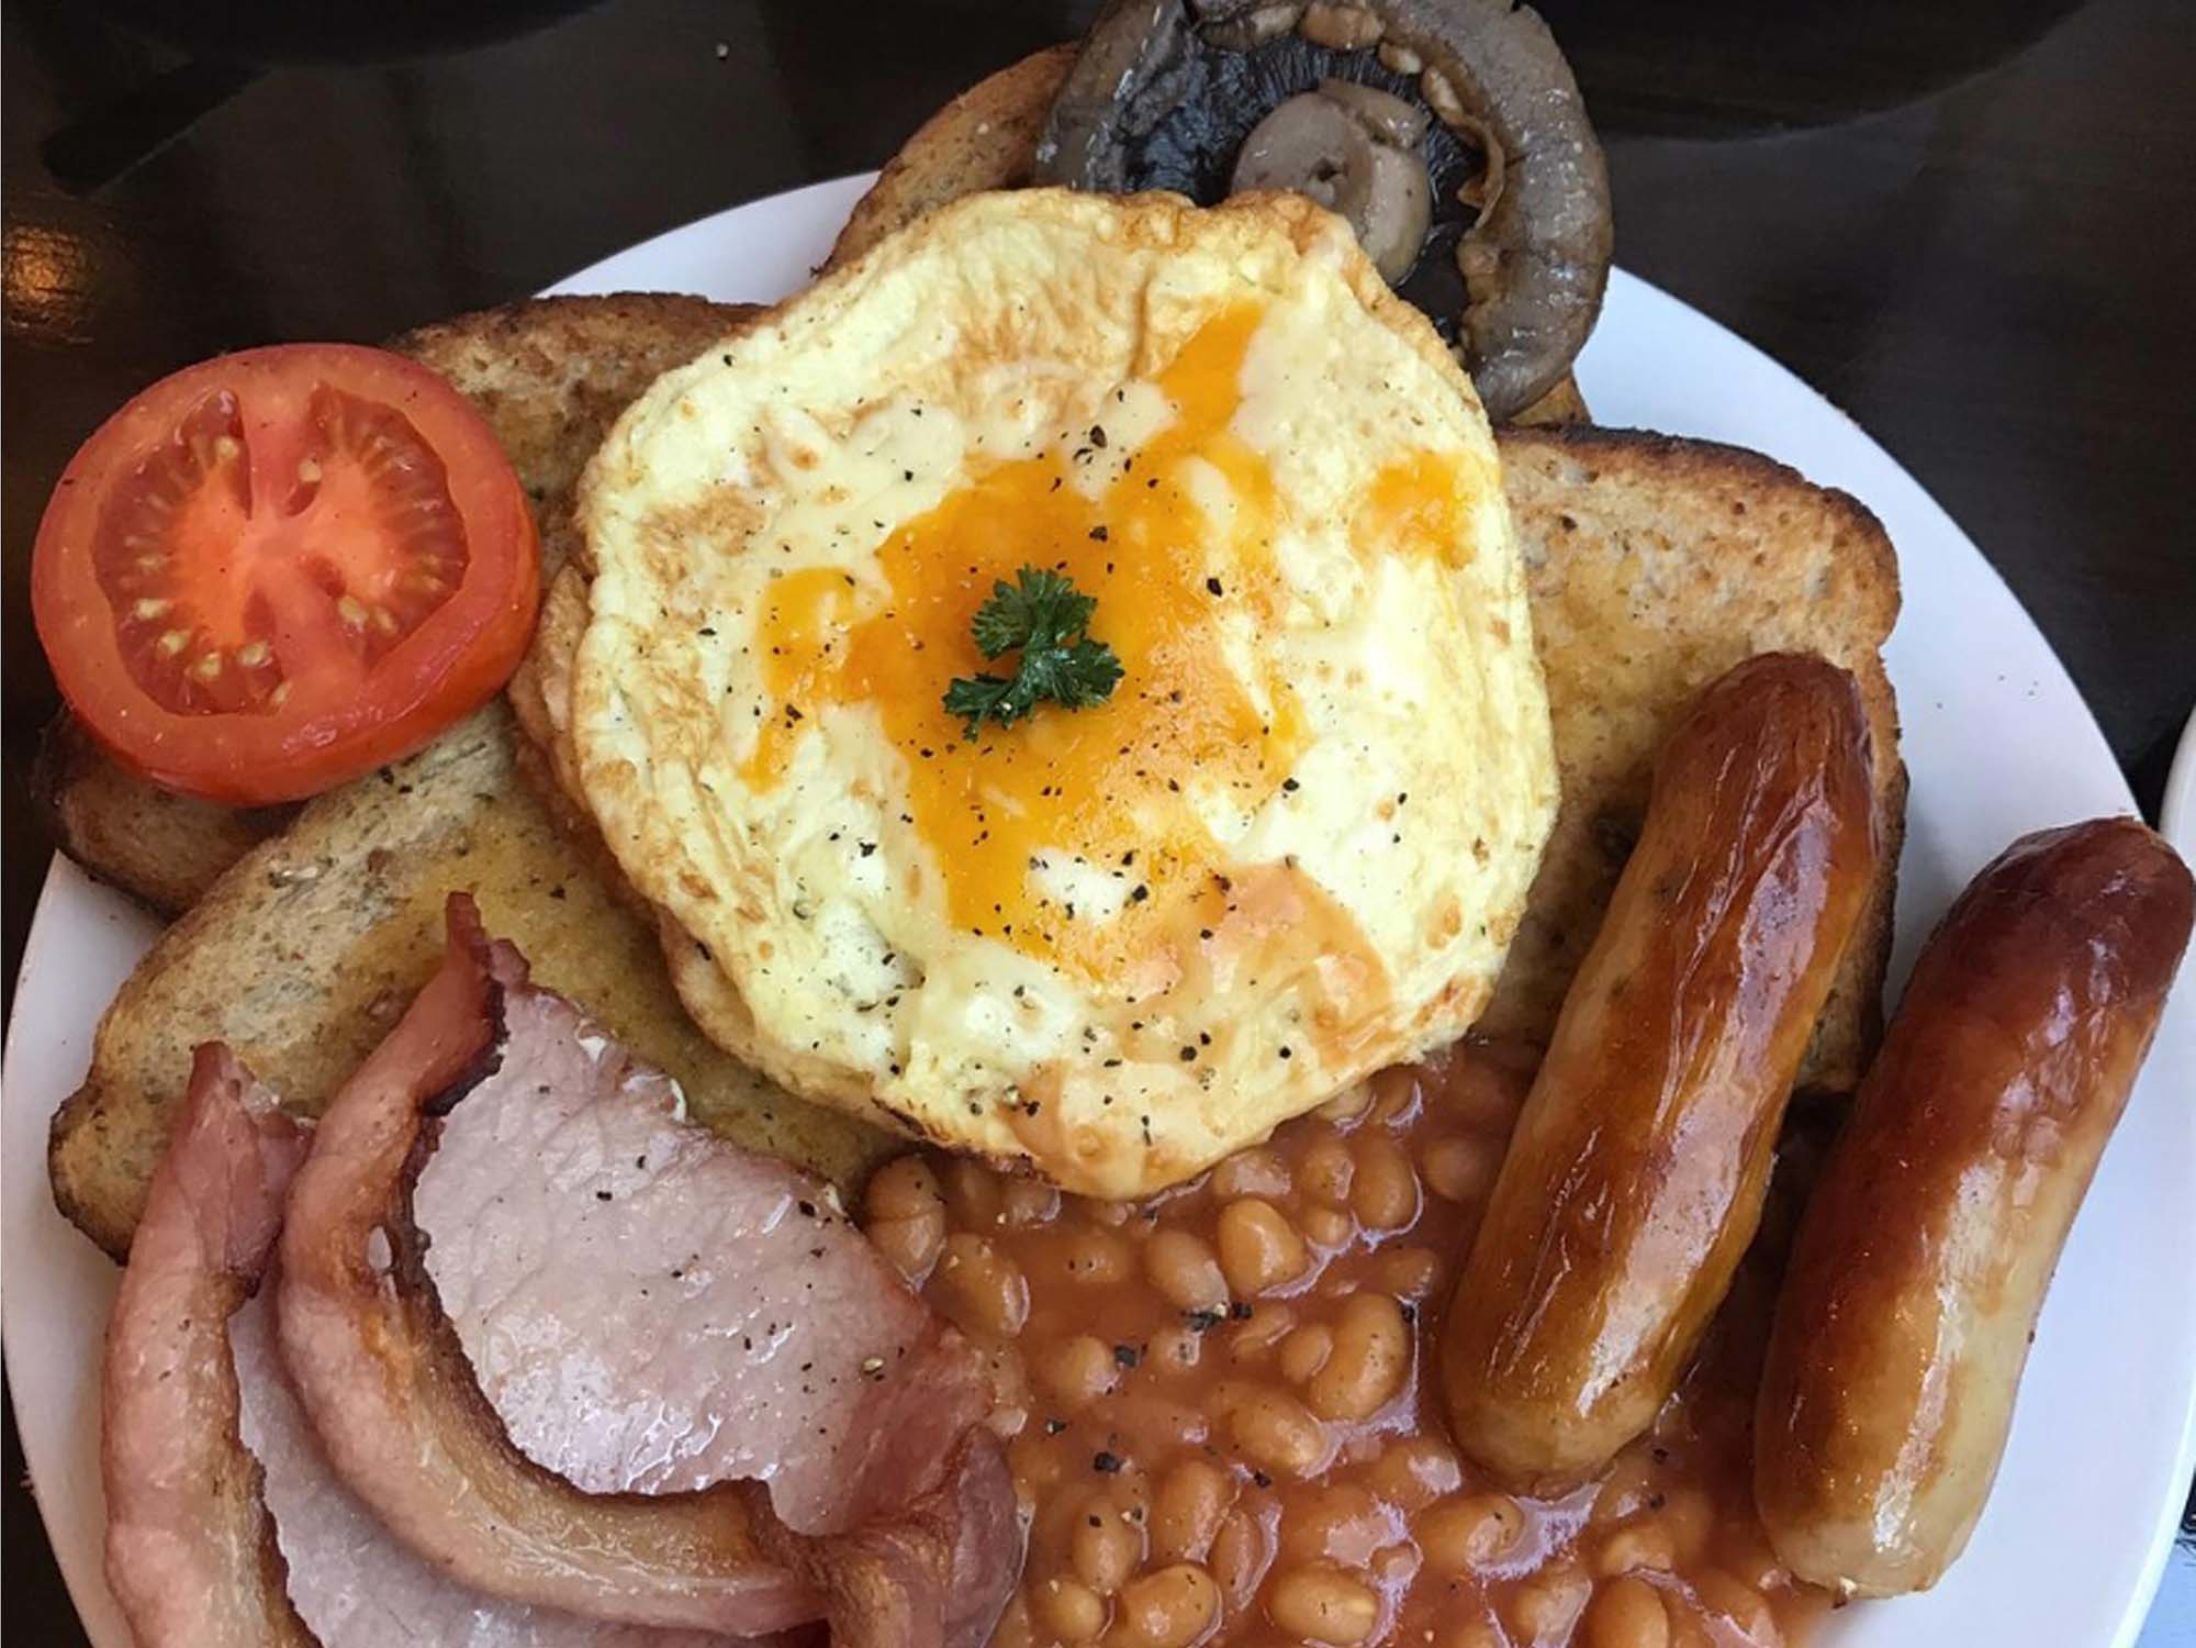 Best Breakfast in Birmingham - Grand Central Kitchen